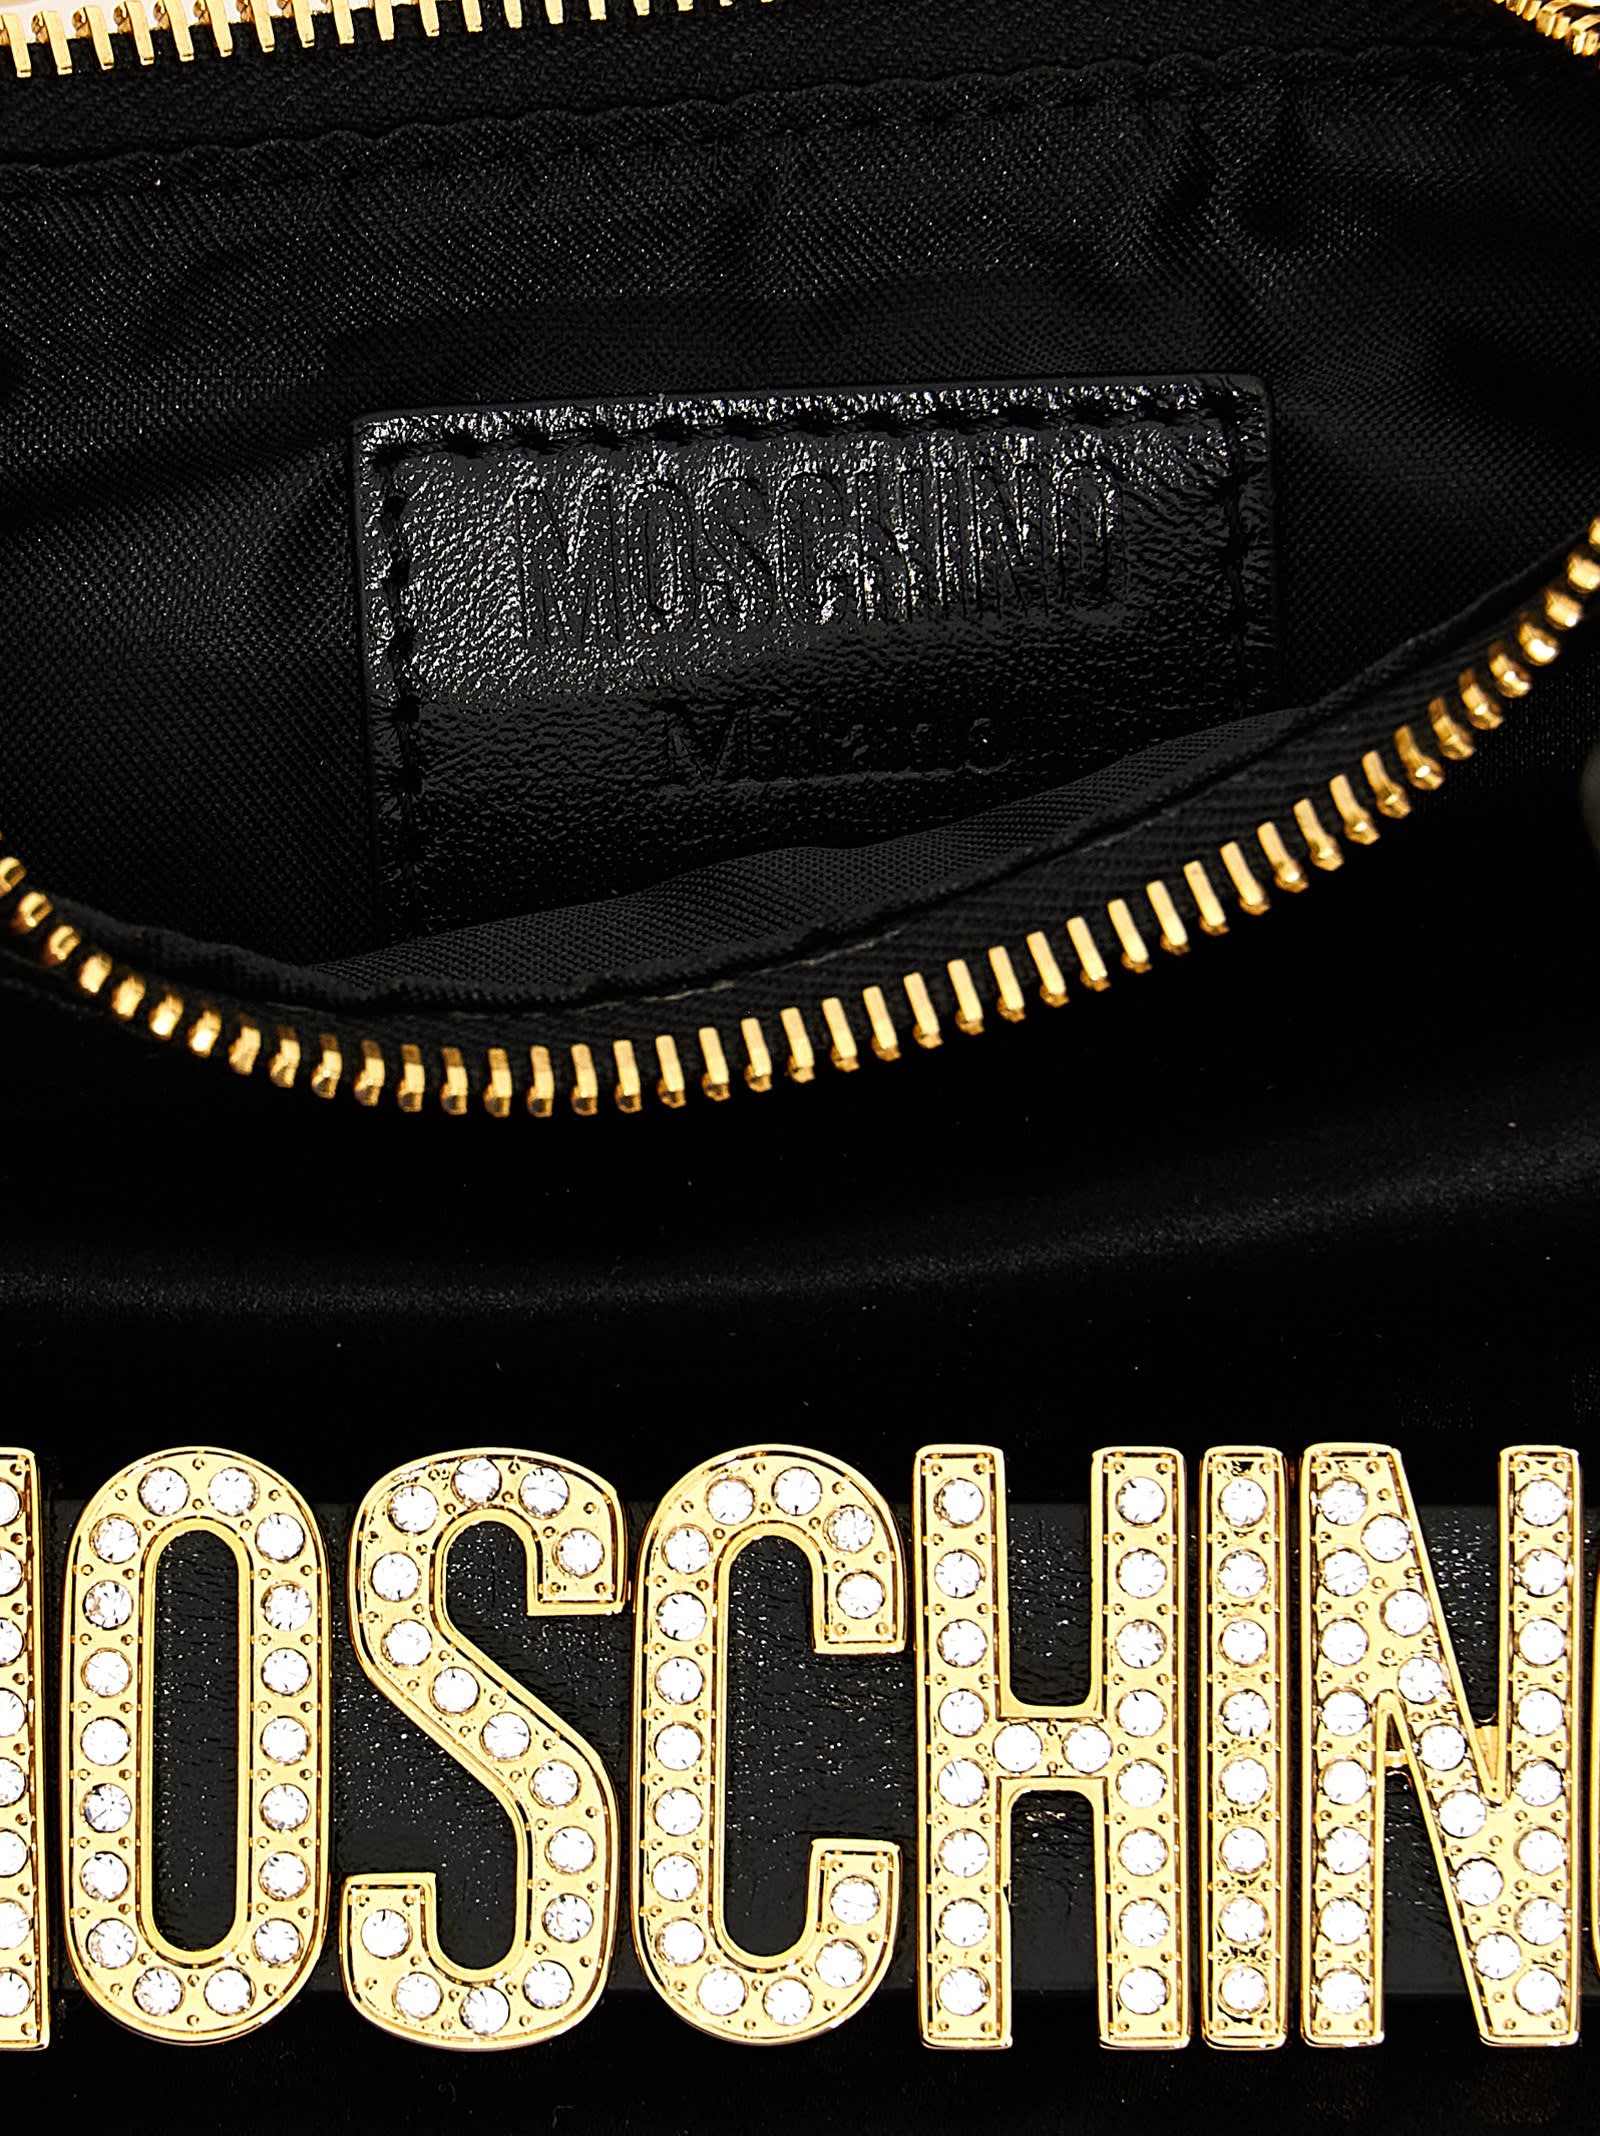 Shop Moschino Logo Handbag In Nero